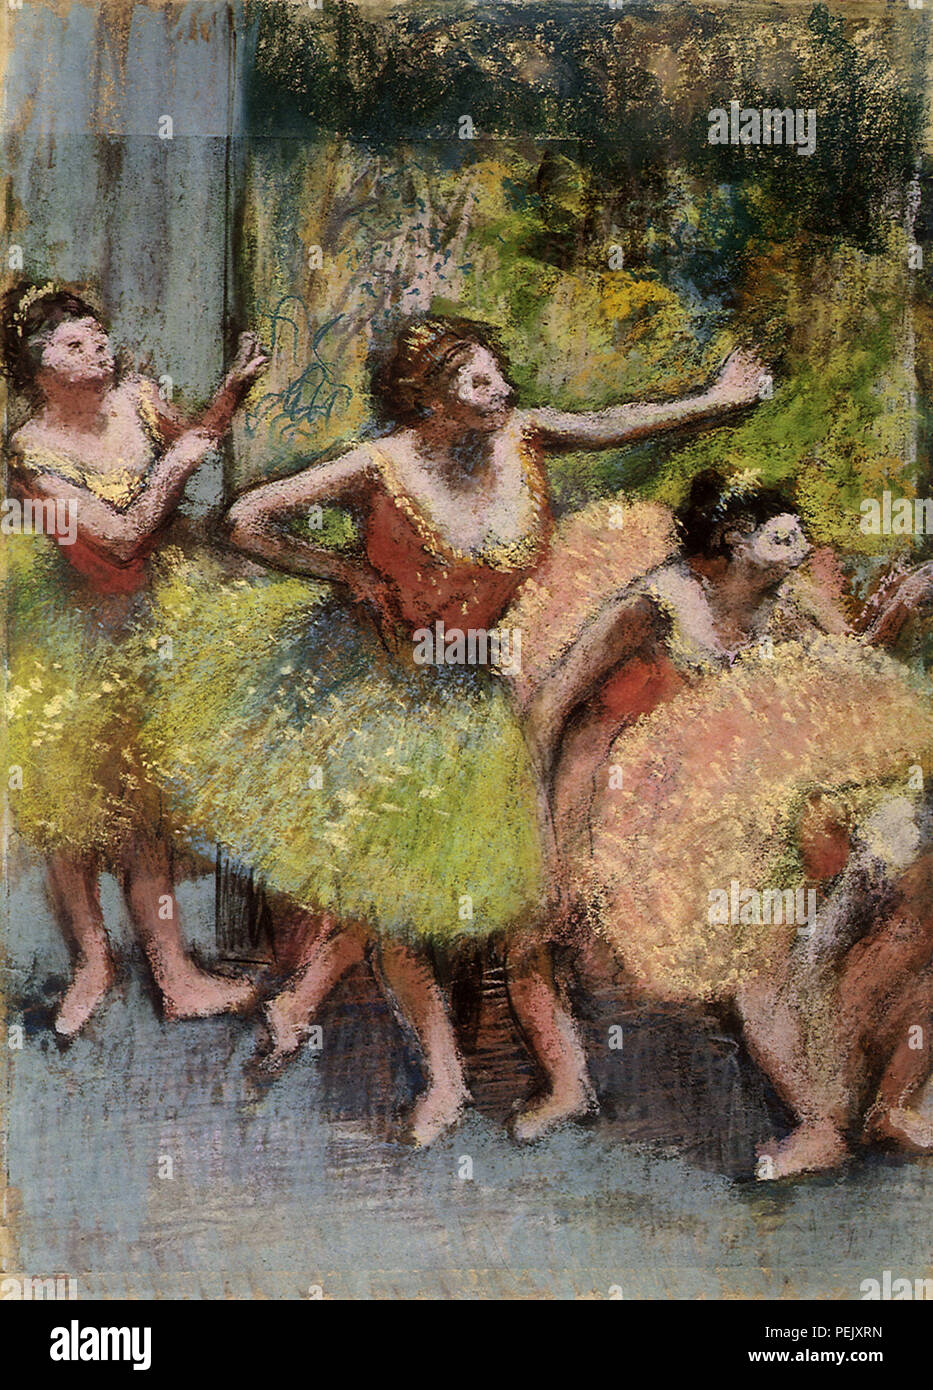 Ballerine in attesa immagini e fotografie stock ad alta risoluzione - Alamy